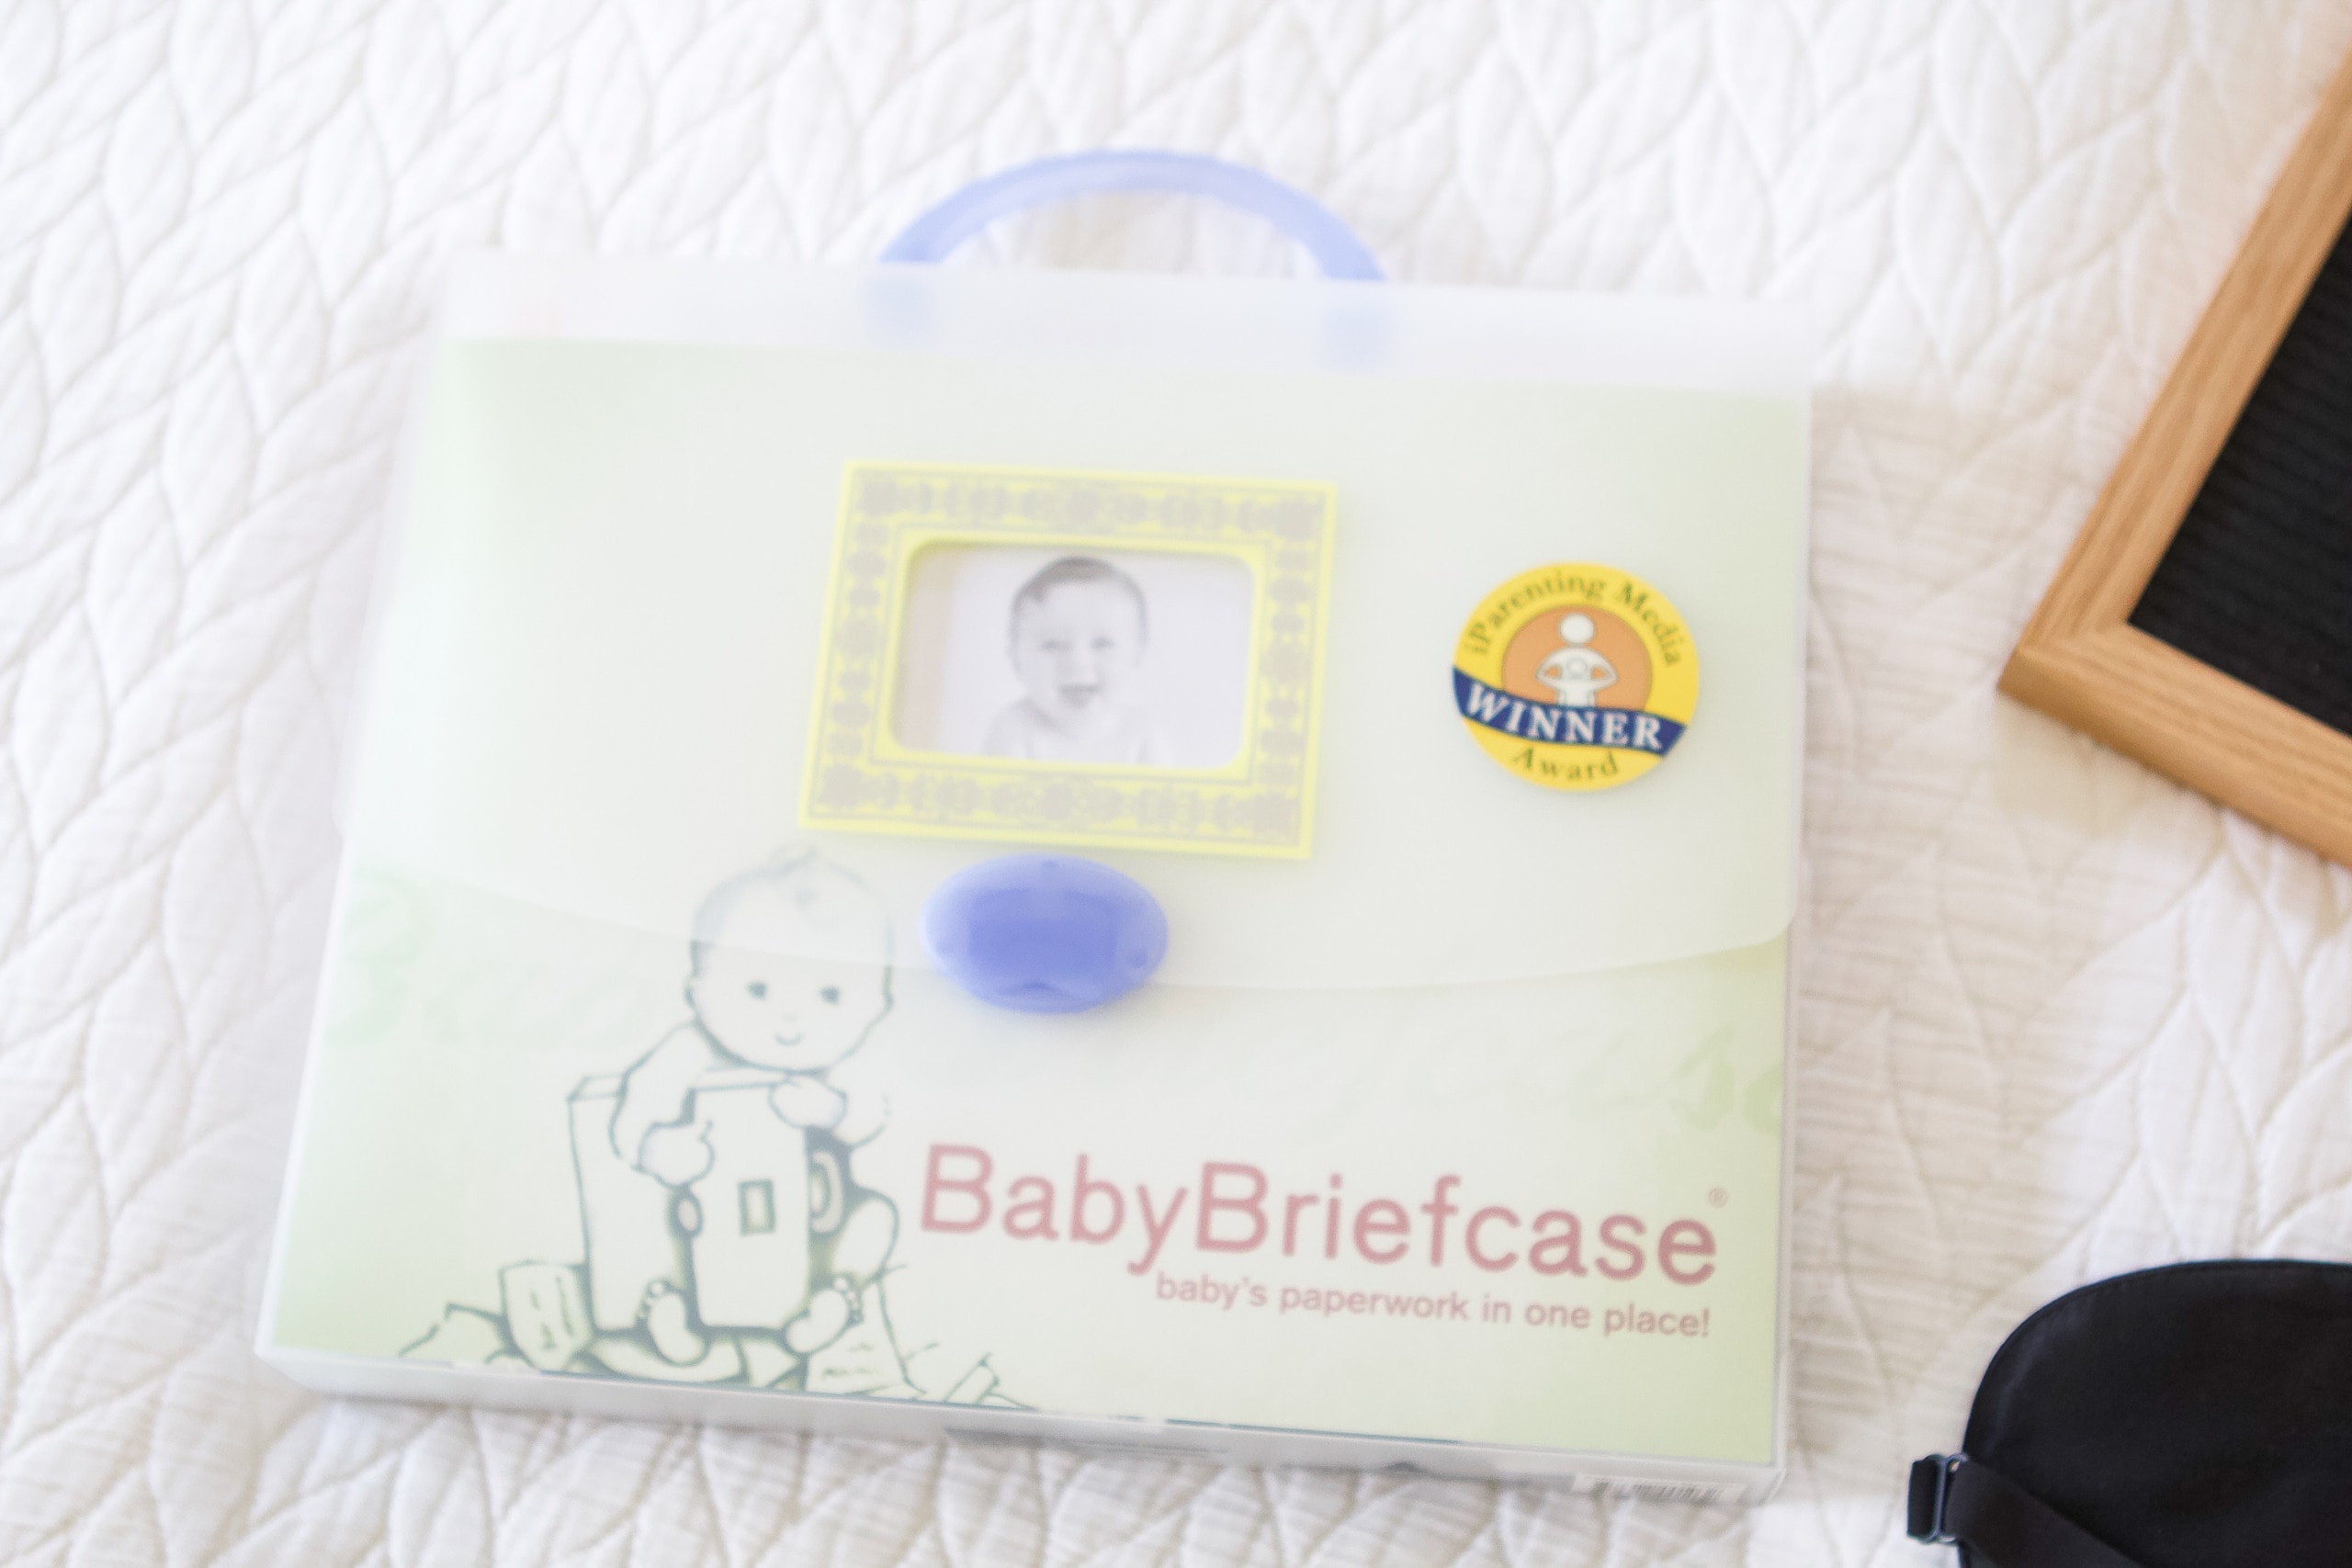 Baby briefcase